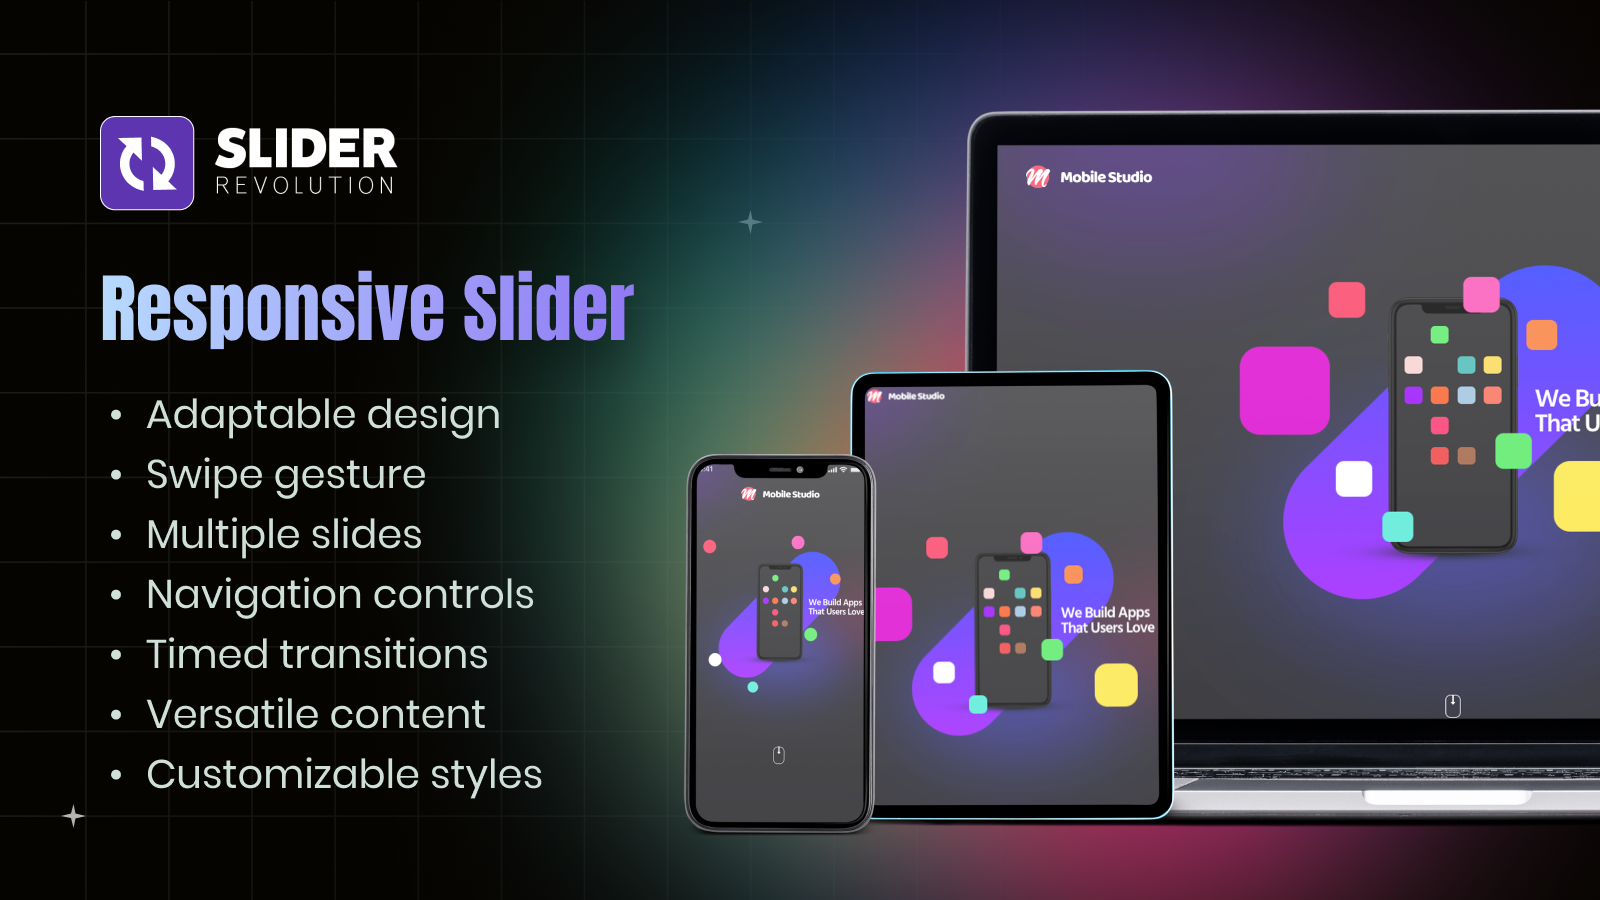 Slider entièrement responsive pour mobile, tablette et desktop